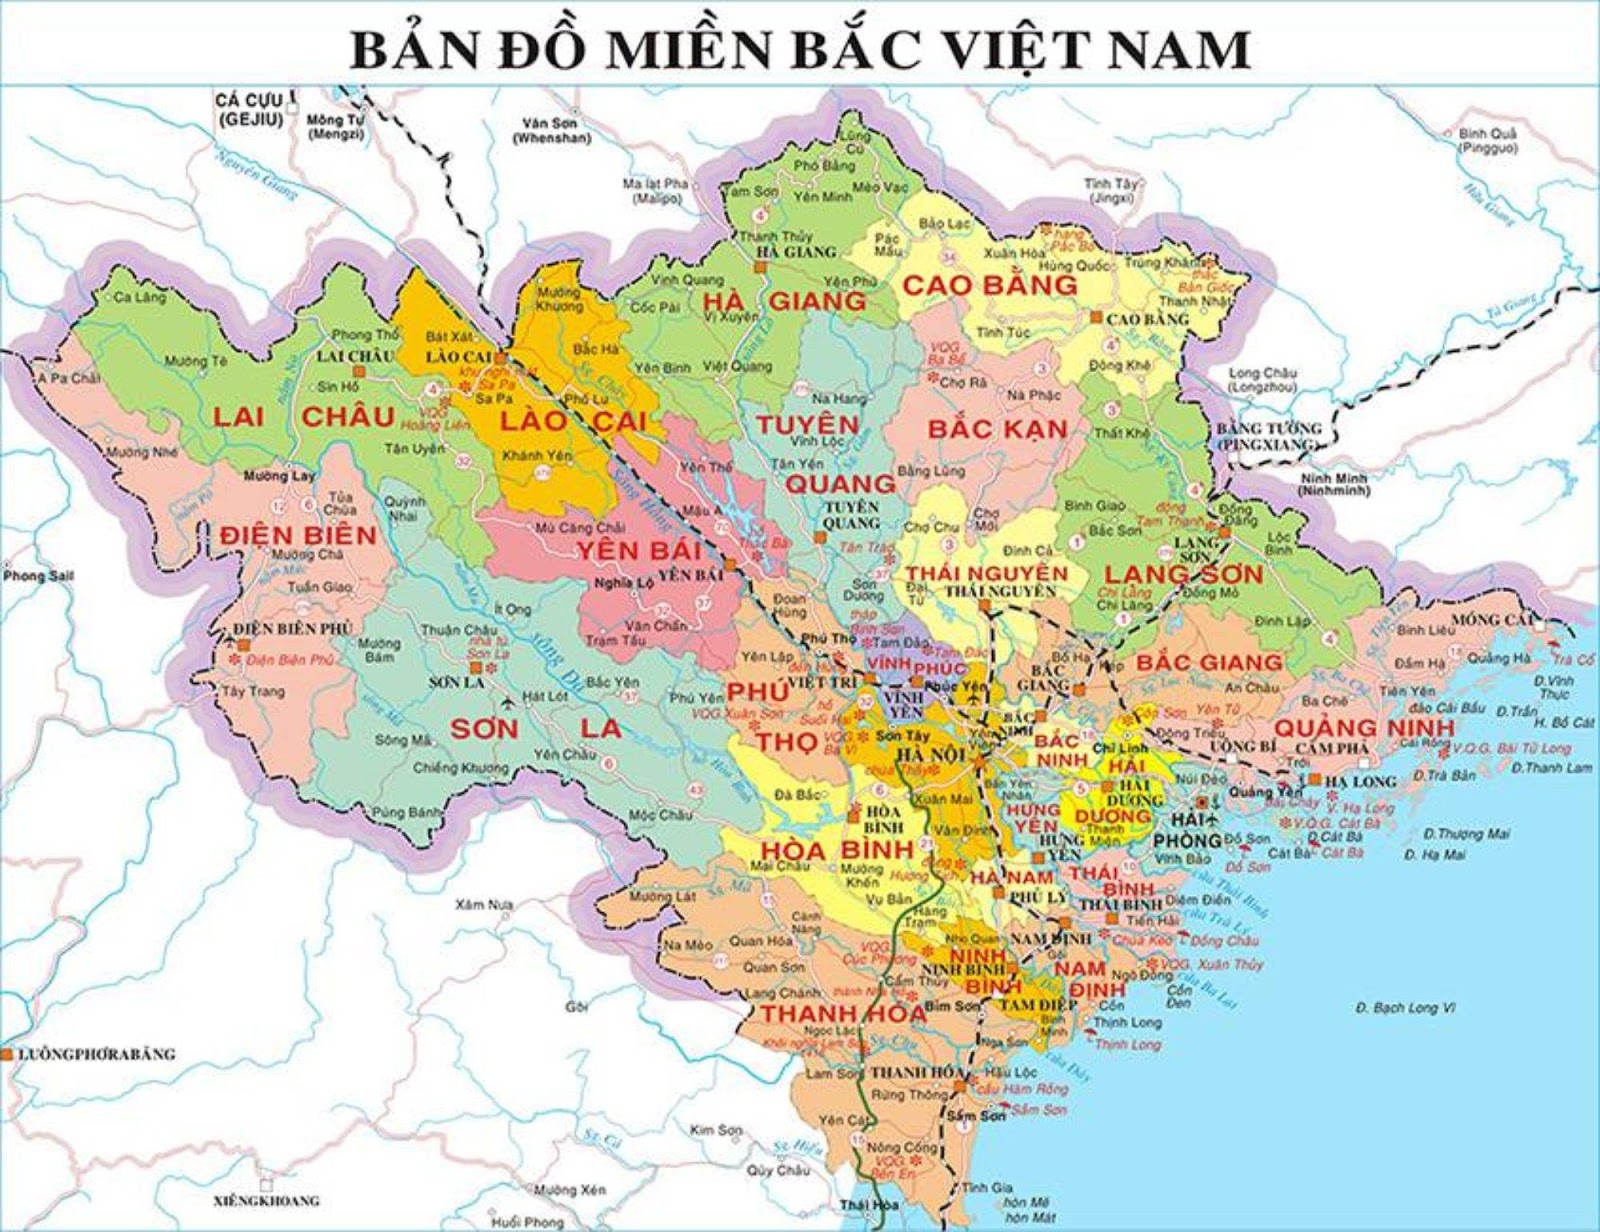 Bản đồ miền Bắc Việt Nam chất lượng cao năm 2024 sẽ giúp bạn có những trải nghiệm thú vị tại miền Bắc nước ta. Bạn sẽ được chiêm ngưỡng vẻ đẹp của các cánh đồng lúa, các khu rừng núi phủ đầy sắc màu cùng hệ thống sông Ngòi đầy mềm mại từ lòng đất.